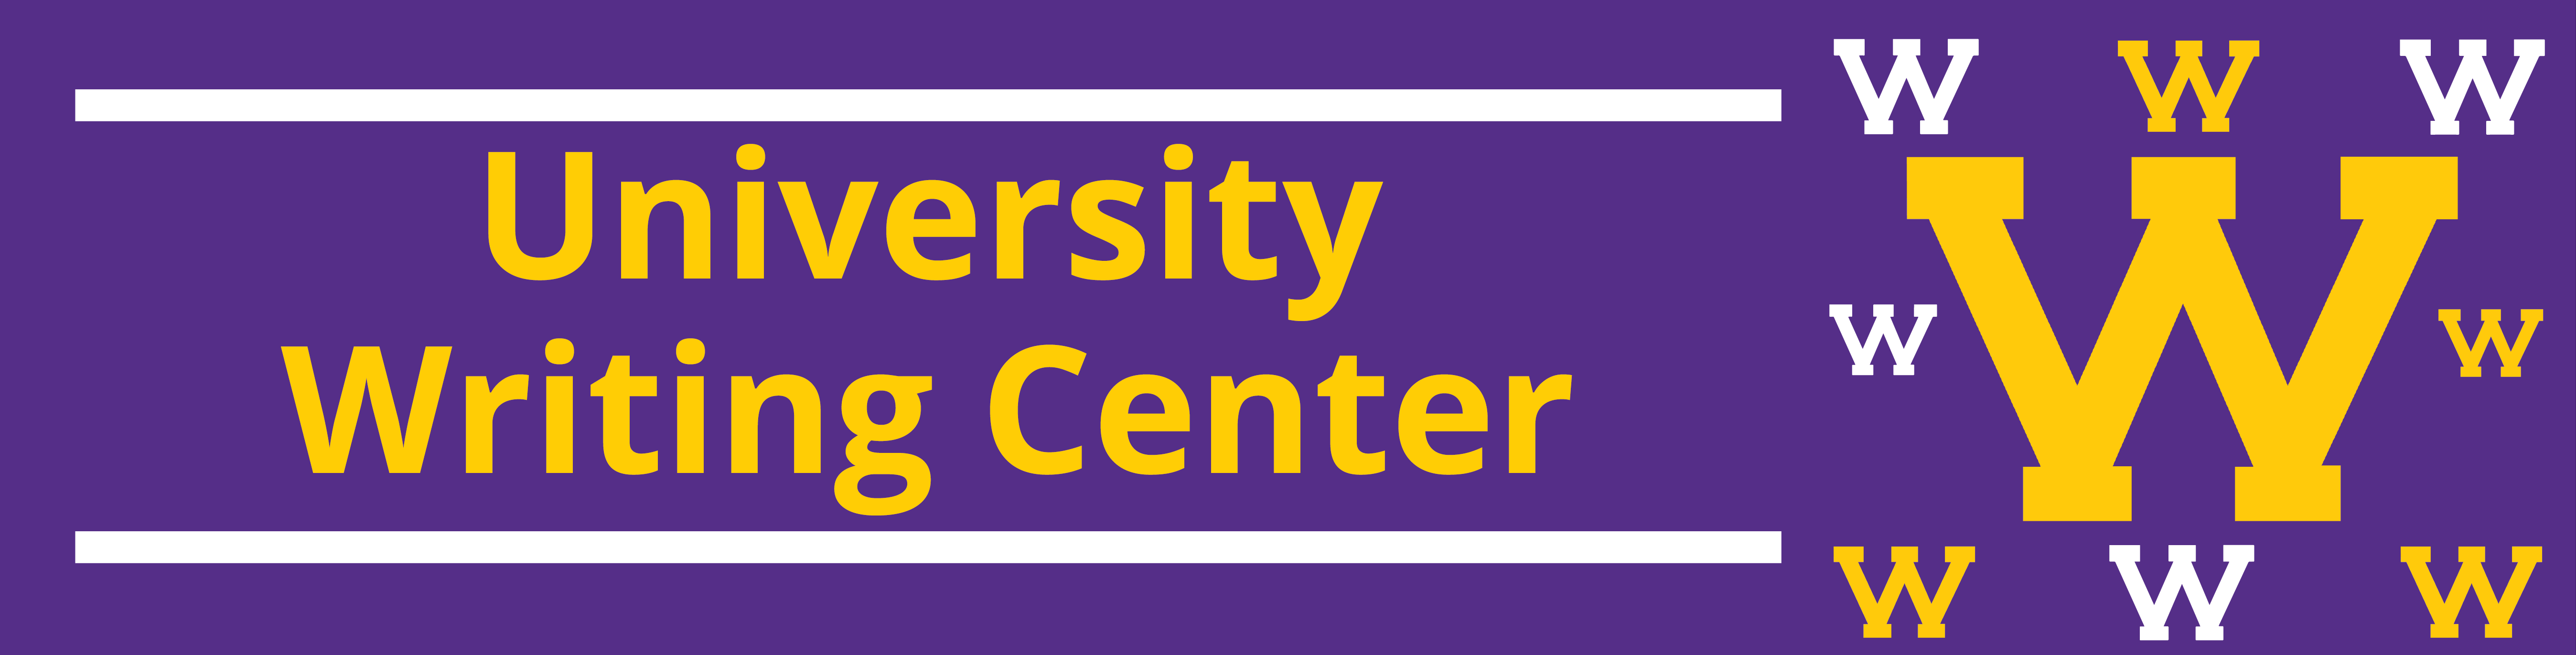 University Writing Center banner